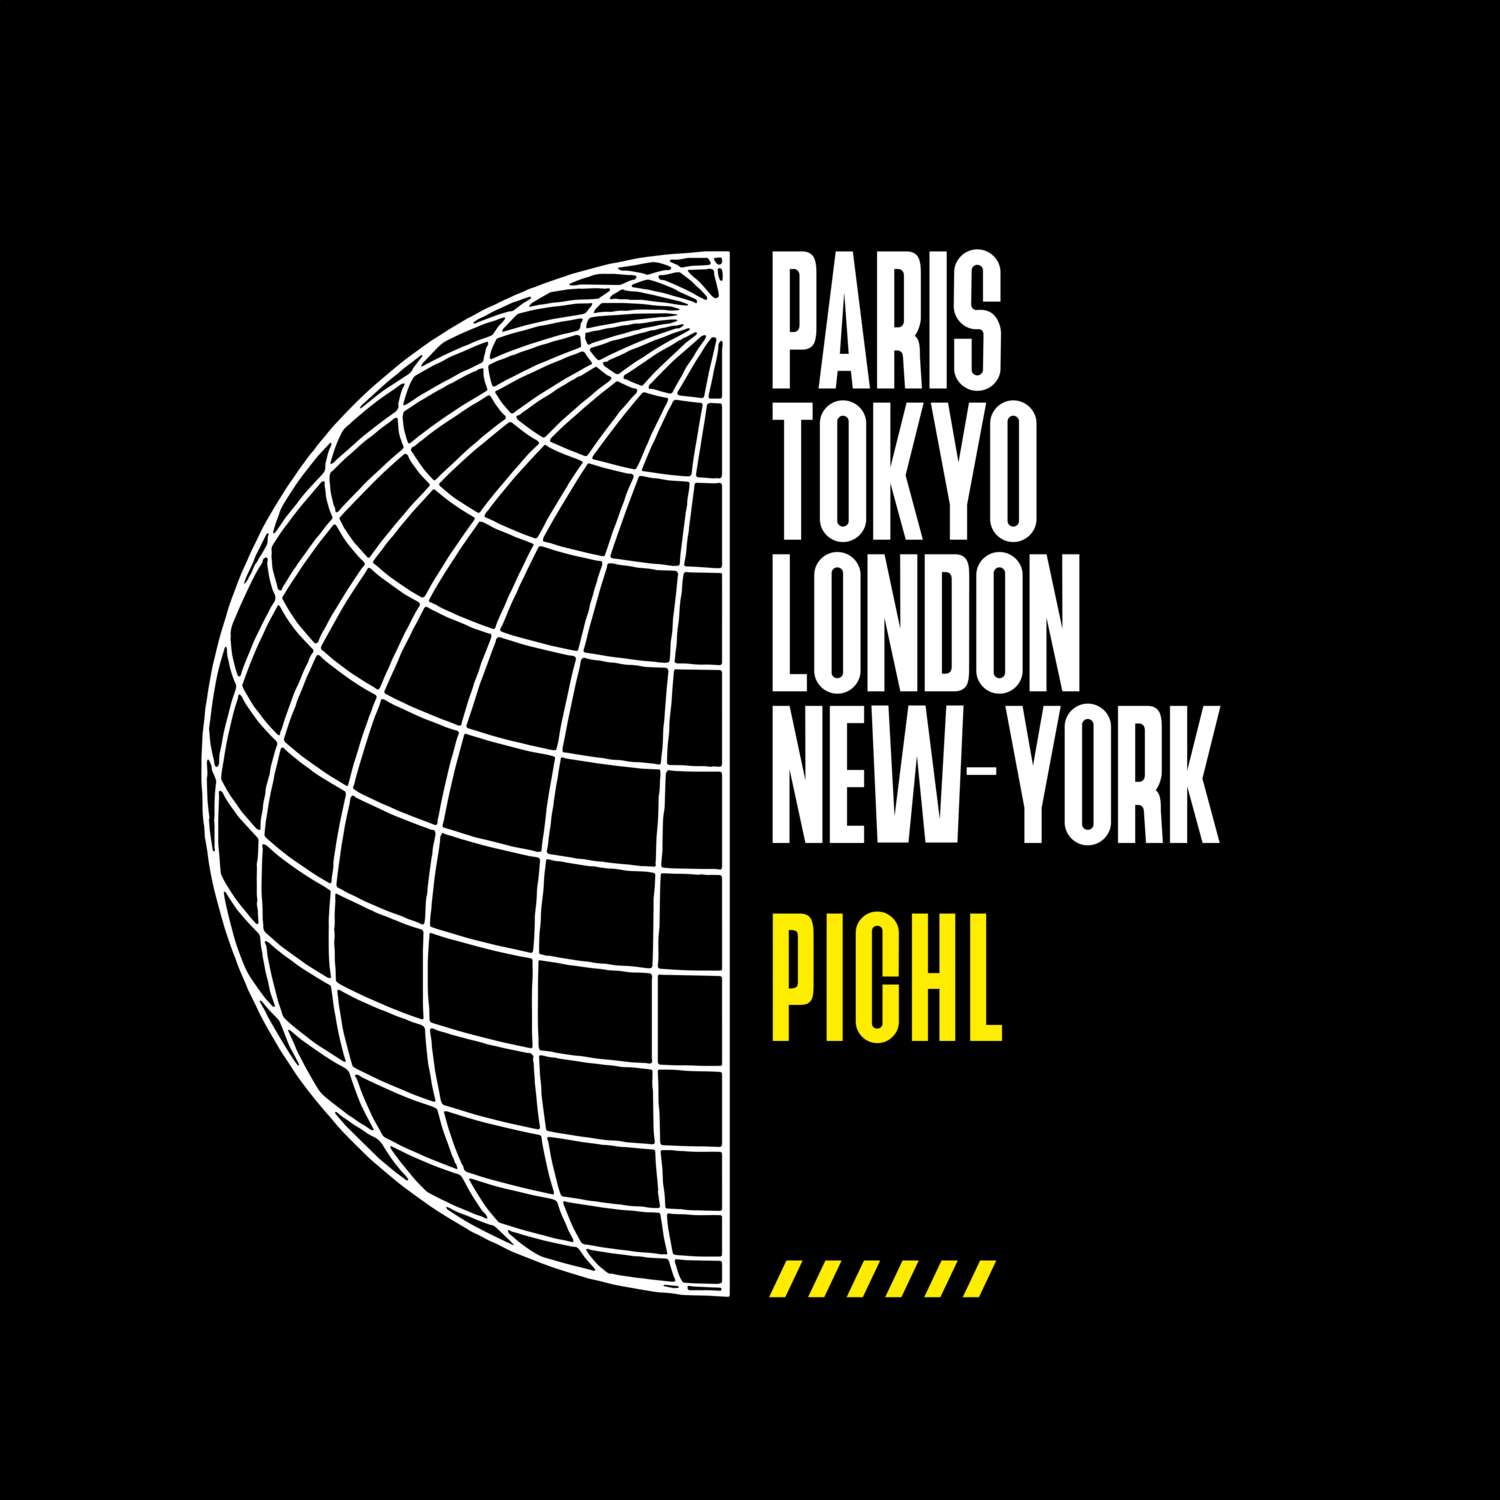 Pichl T-Shirt »Paris Tokyo London«